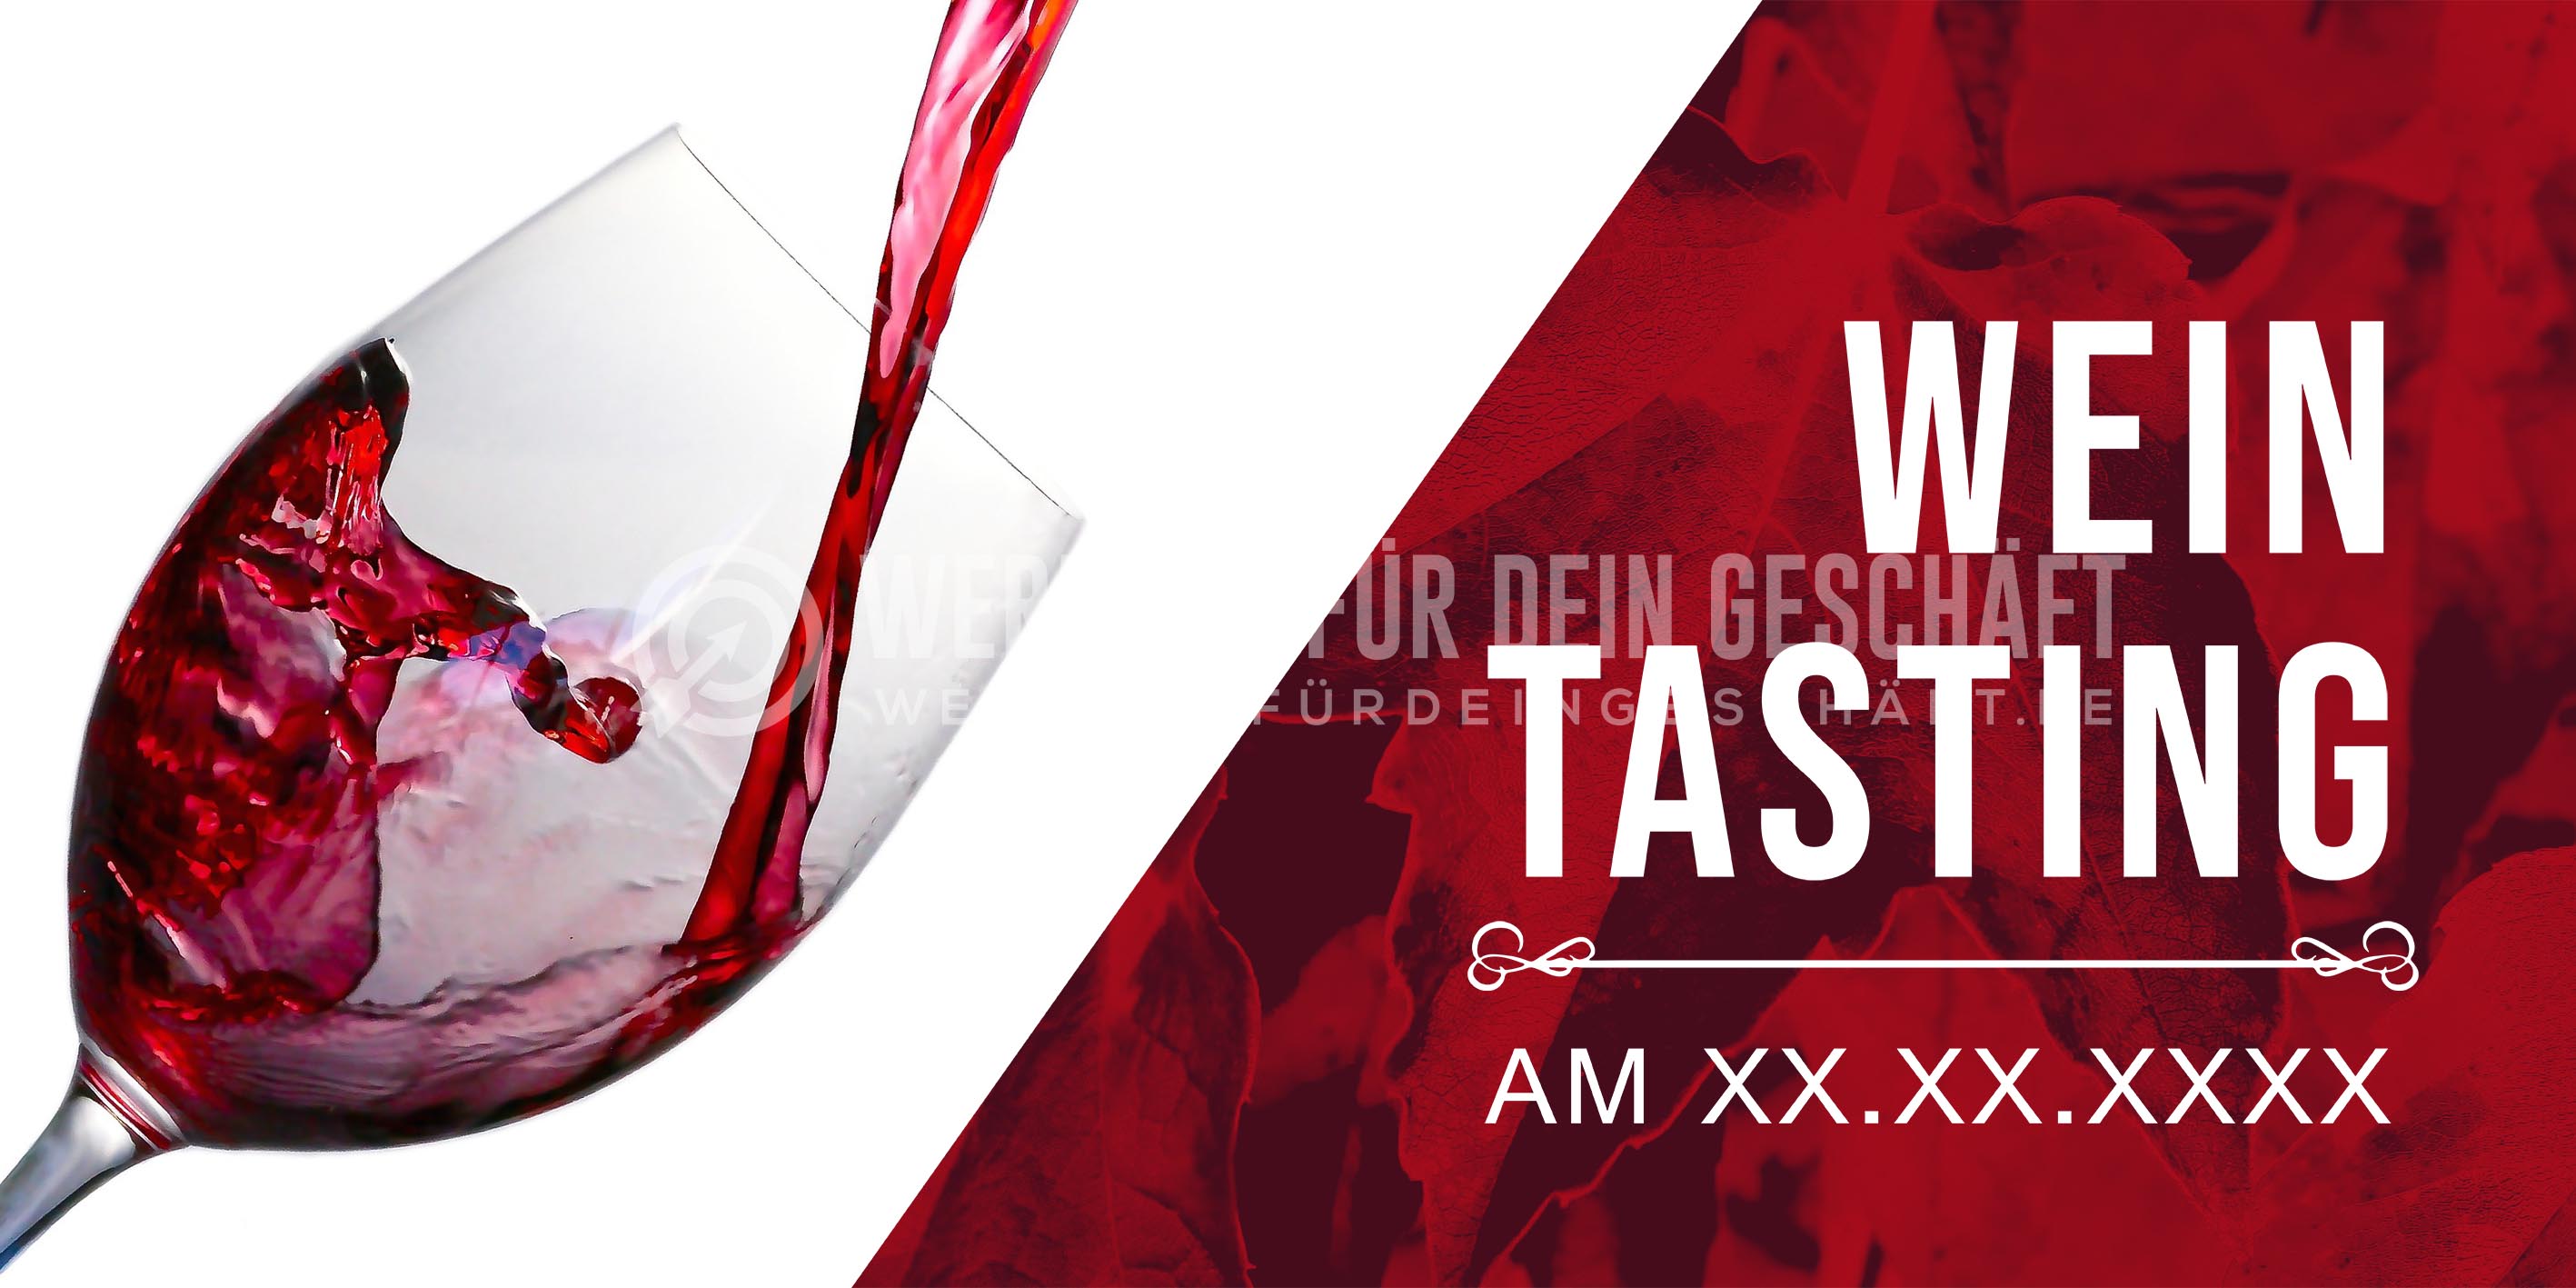 2:1 | Wein Tasting Poster | Werbeposter für Wein | 2 zu 1 Format